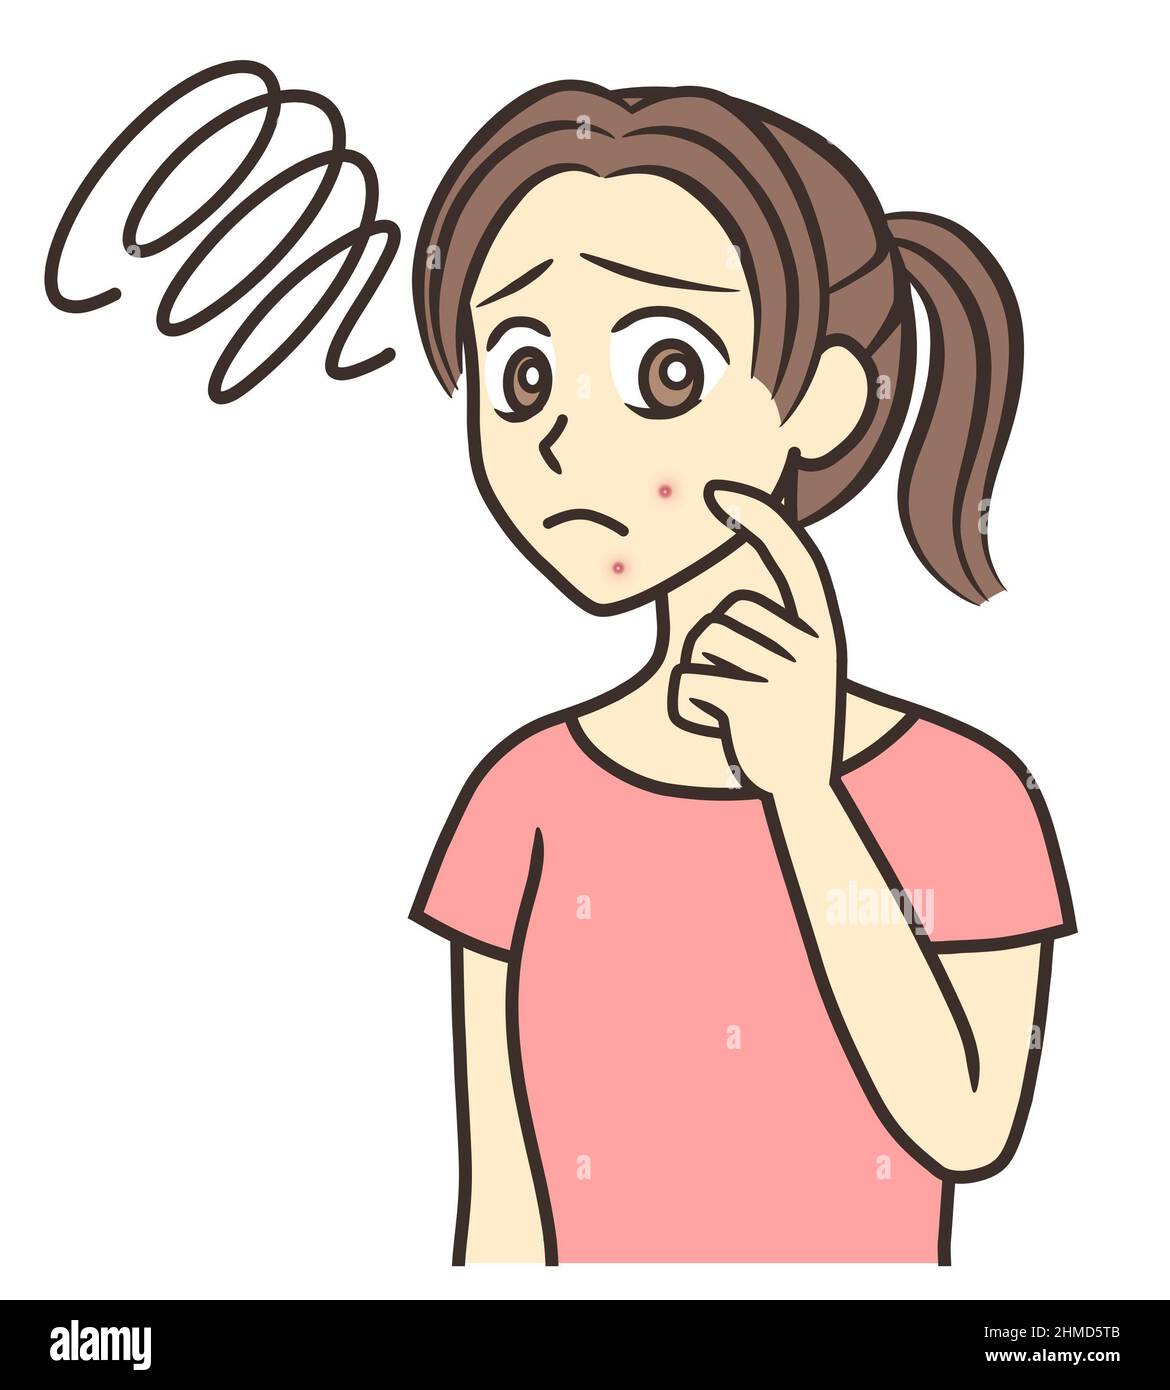 Ein Mädchen im Teenageralter, das Akne auf ihrer Wange und ihrem Kinn mit einem traurigen Gefühl betrachtet Stockfoto